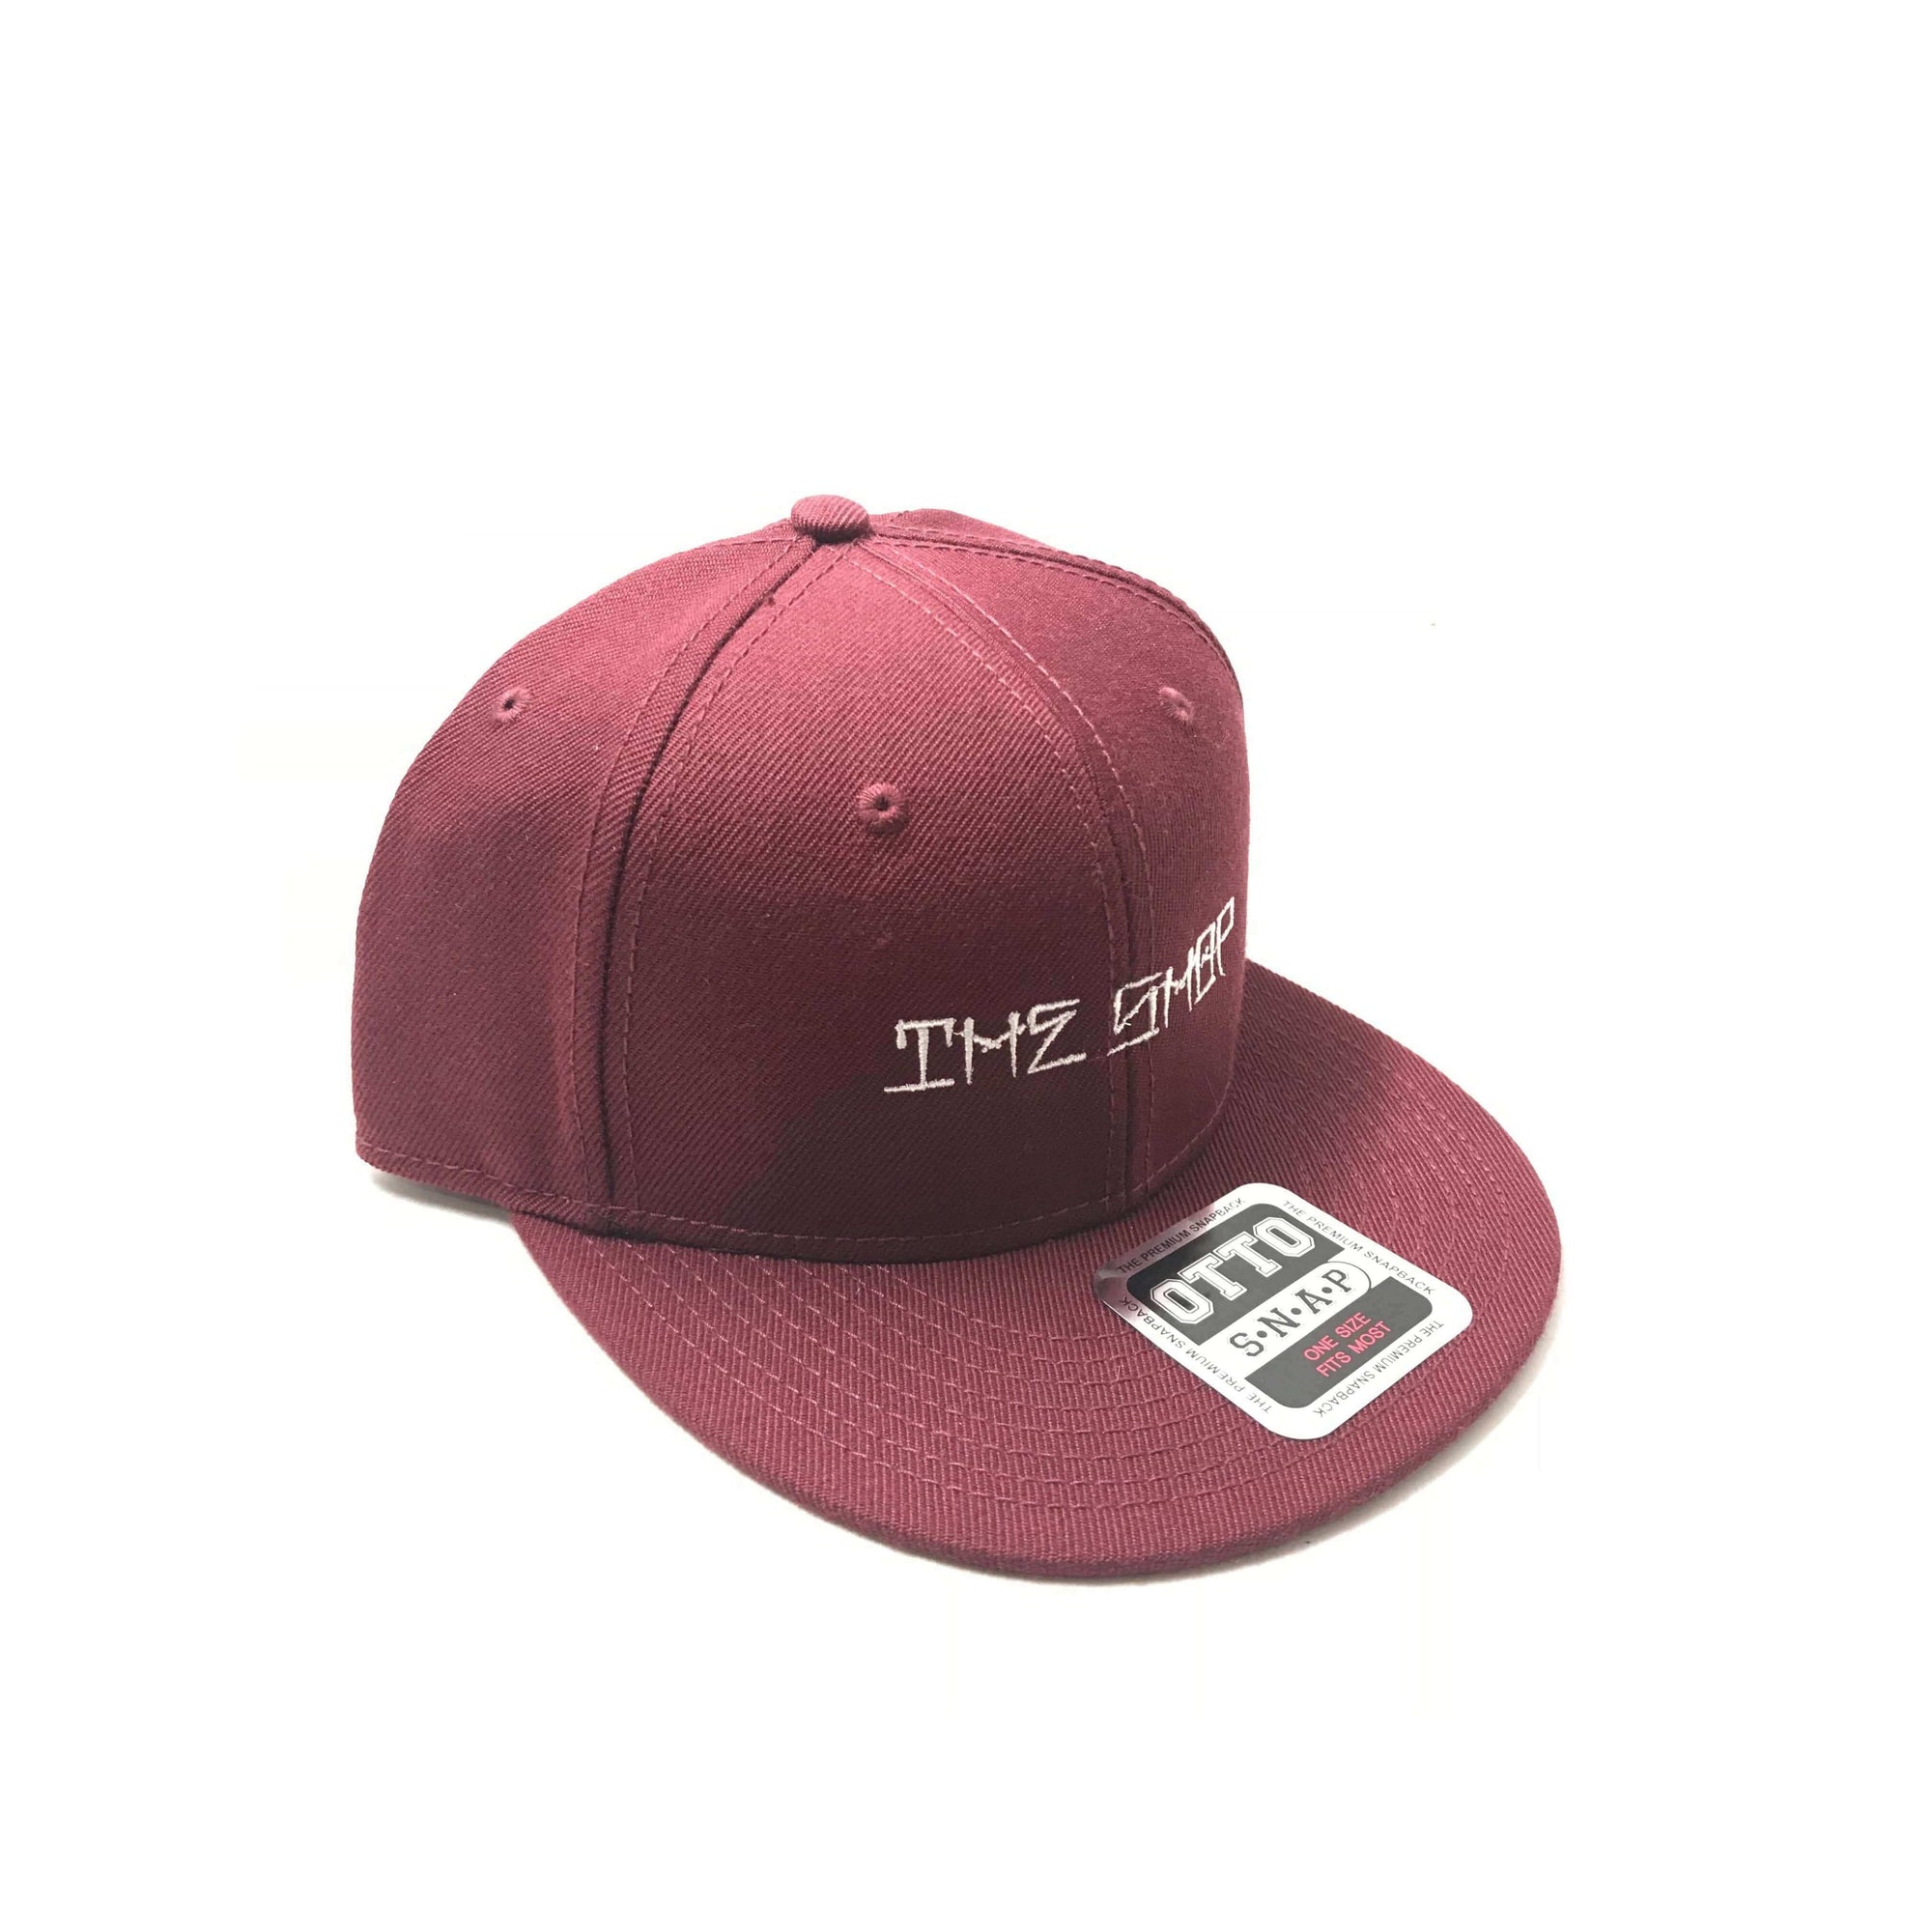 The Shop Snapback Caps |HATS |$19.99 |TSP The Shop | The Shop Snapback Caps